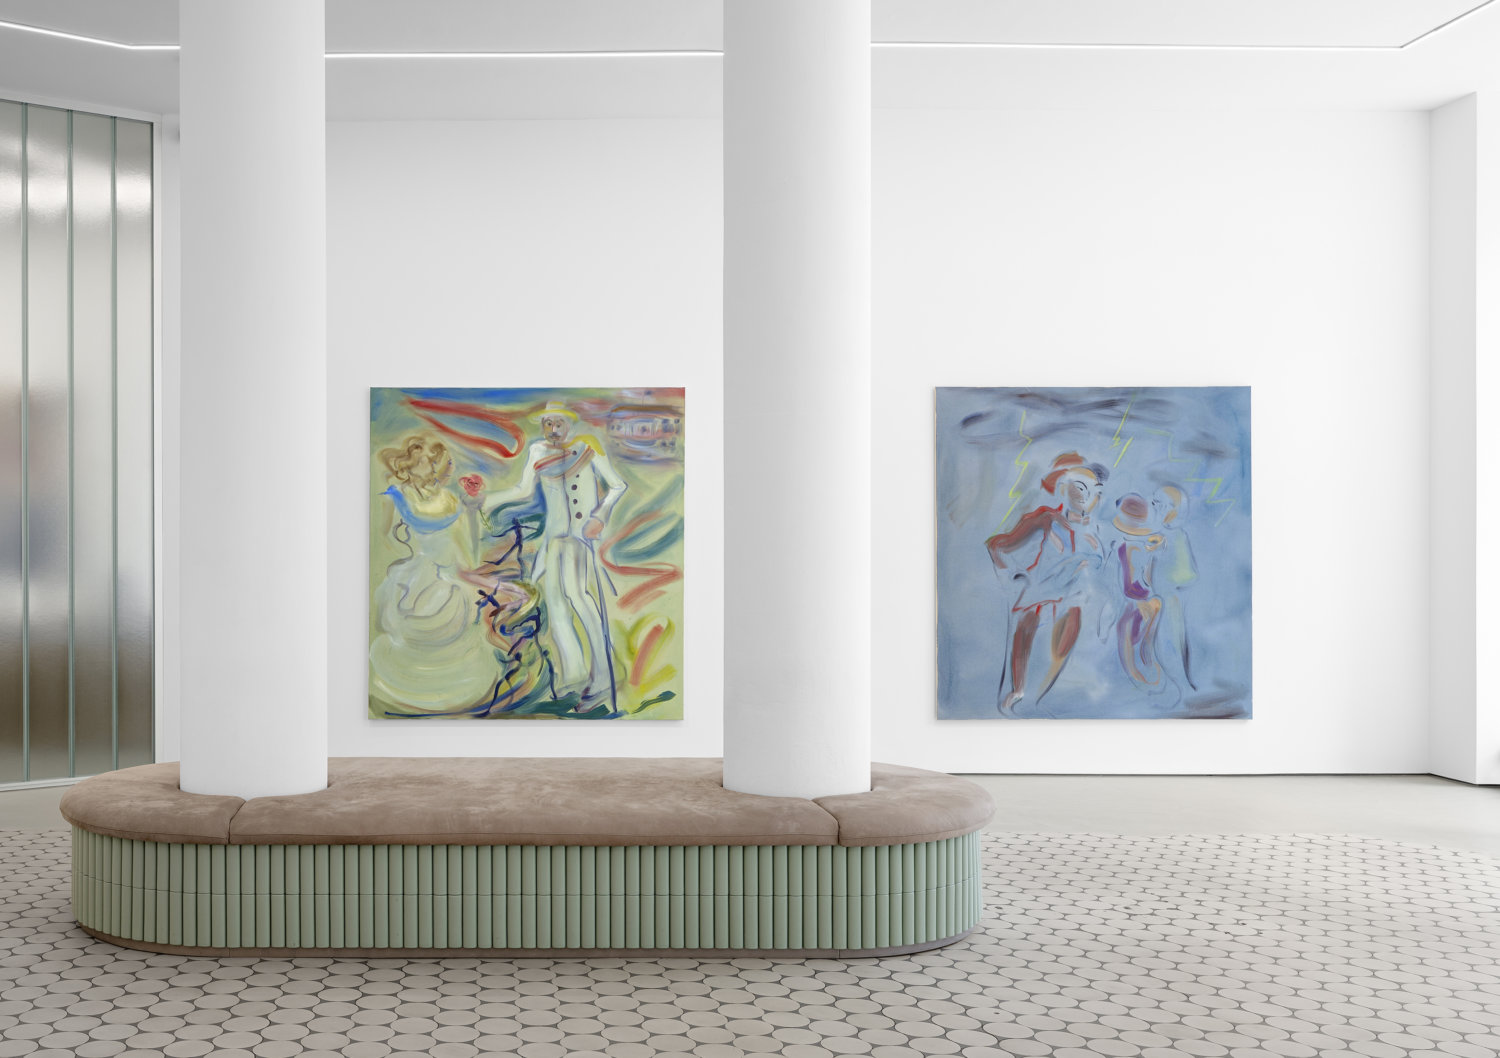 An der Wand der Galerie Wentrup hängen zwei großformatige Malereien, die Szenen aus dem Leben von Walther Rathenau zeigen.